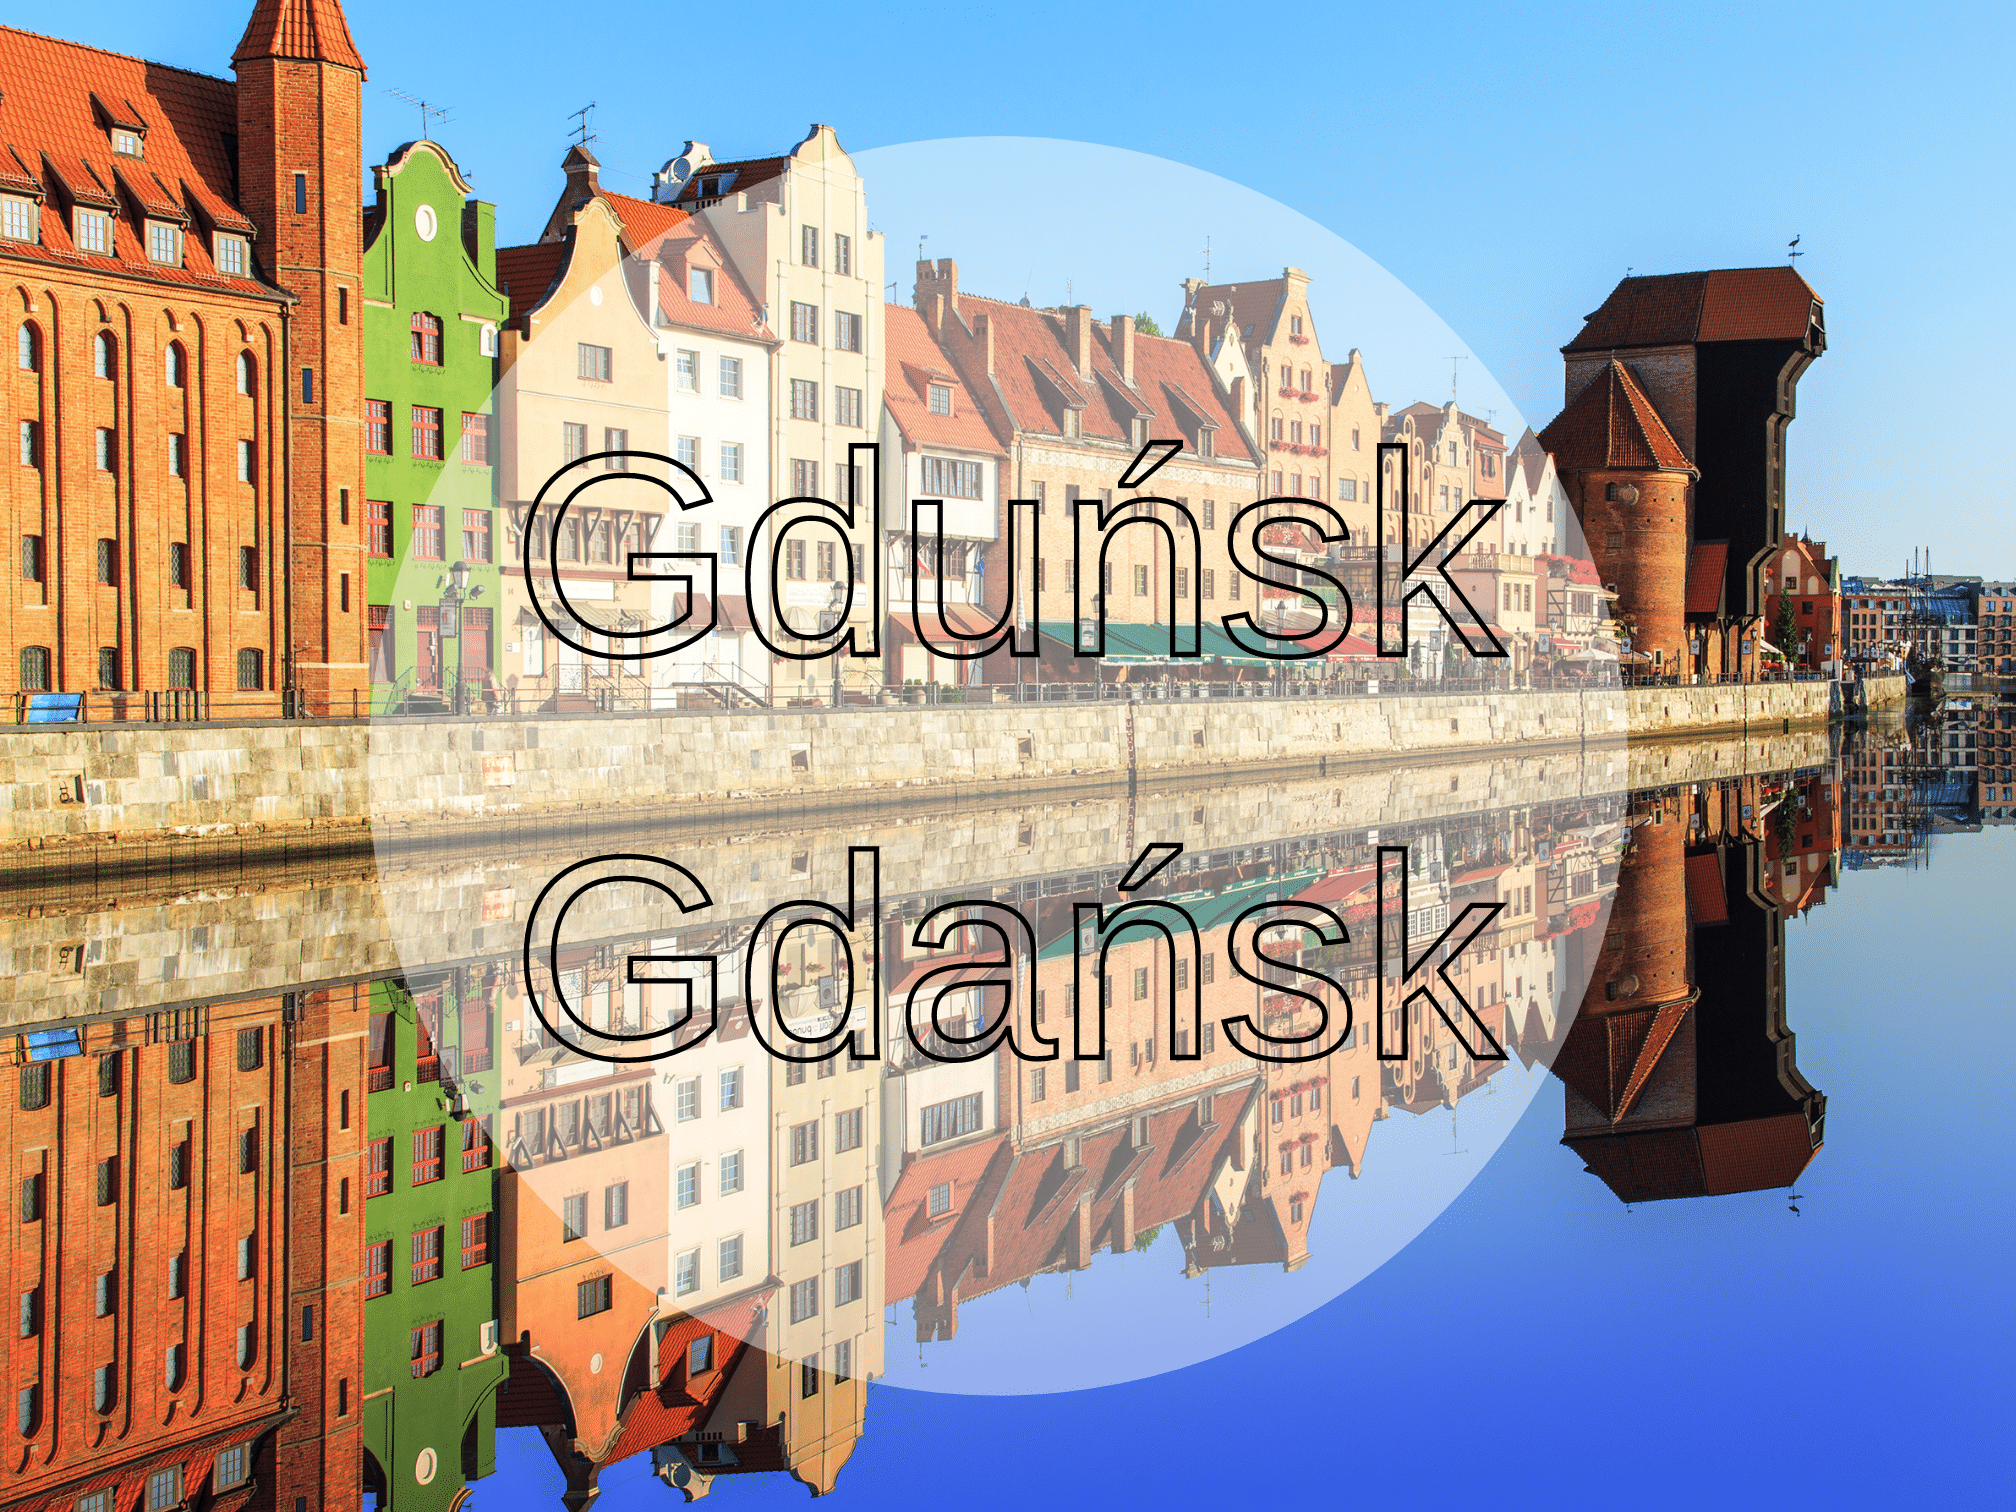 Gdańsk perełki - Gdańskie Perełki